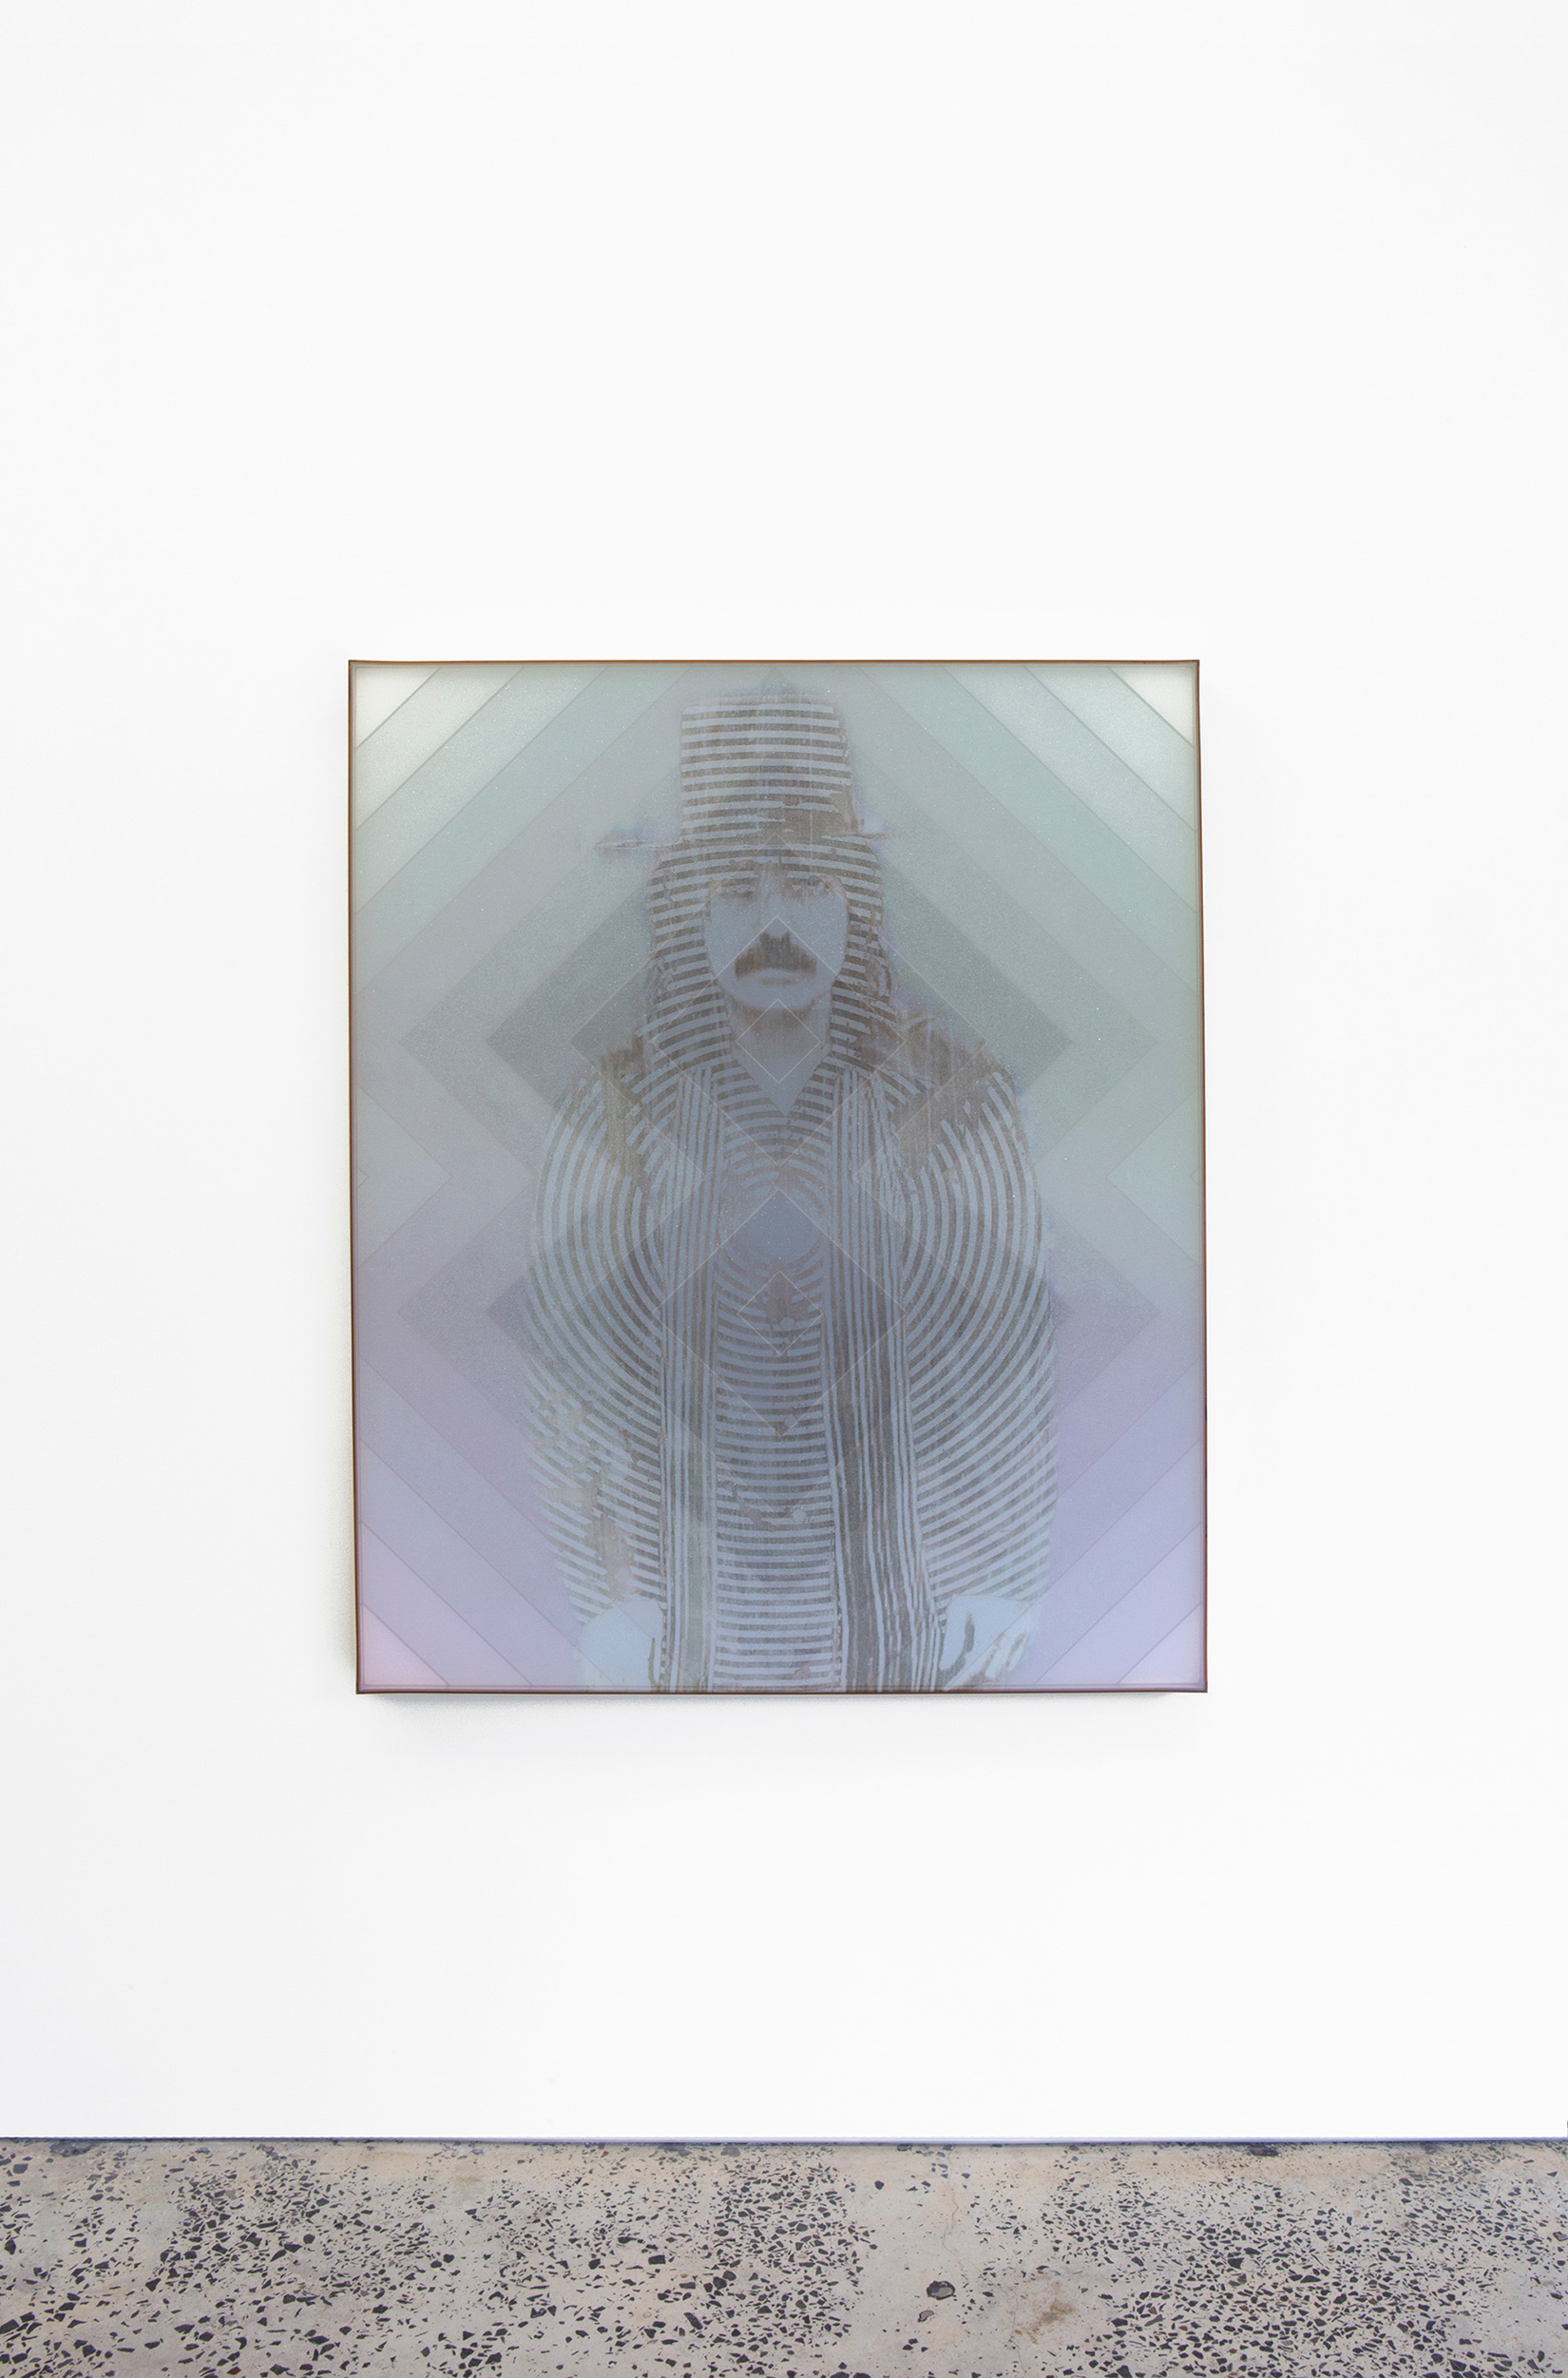 Jonny Niesche, “Blank magic parralactic”, 2014, glitter, linen, acrylic, voile, euromir, 1192 x 1342 mm